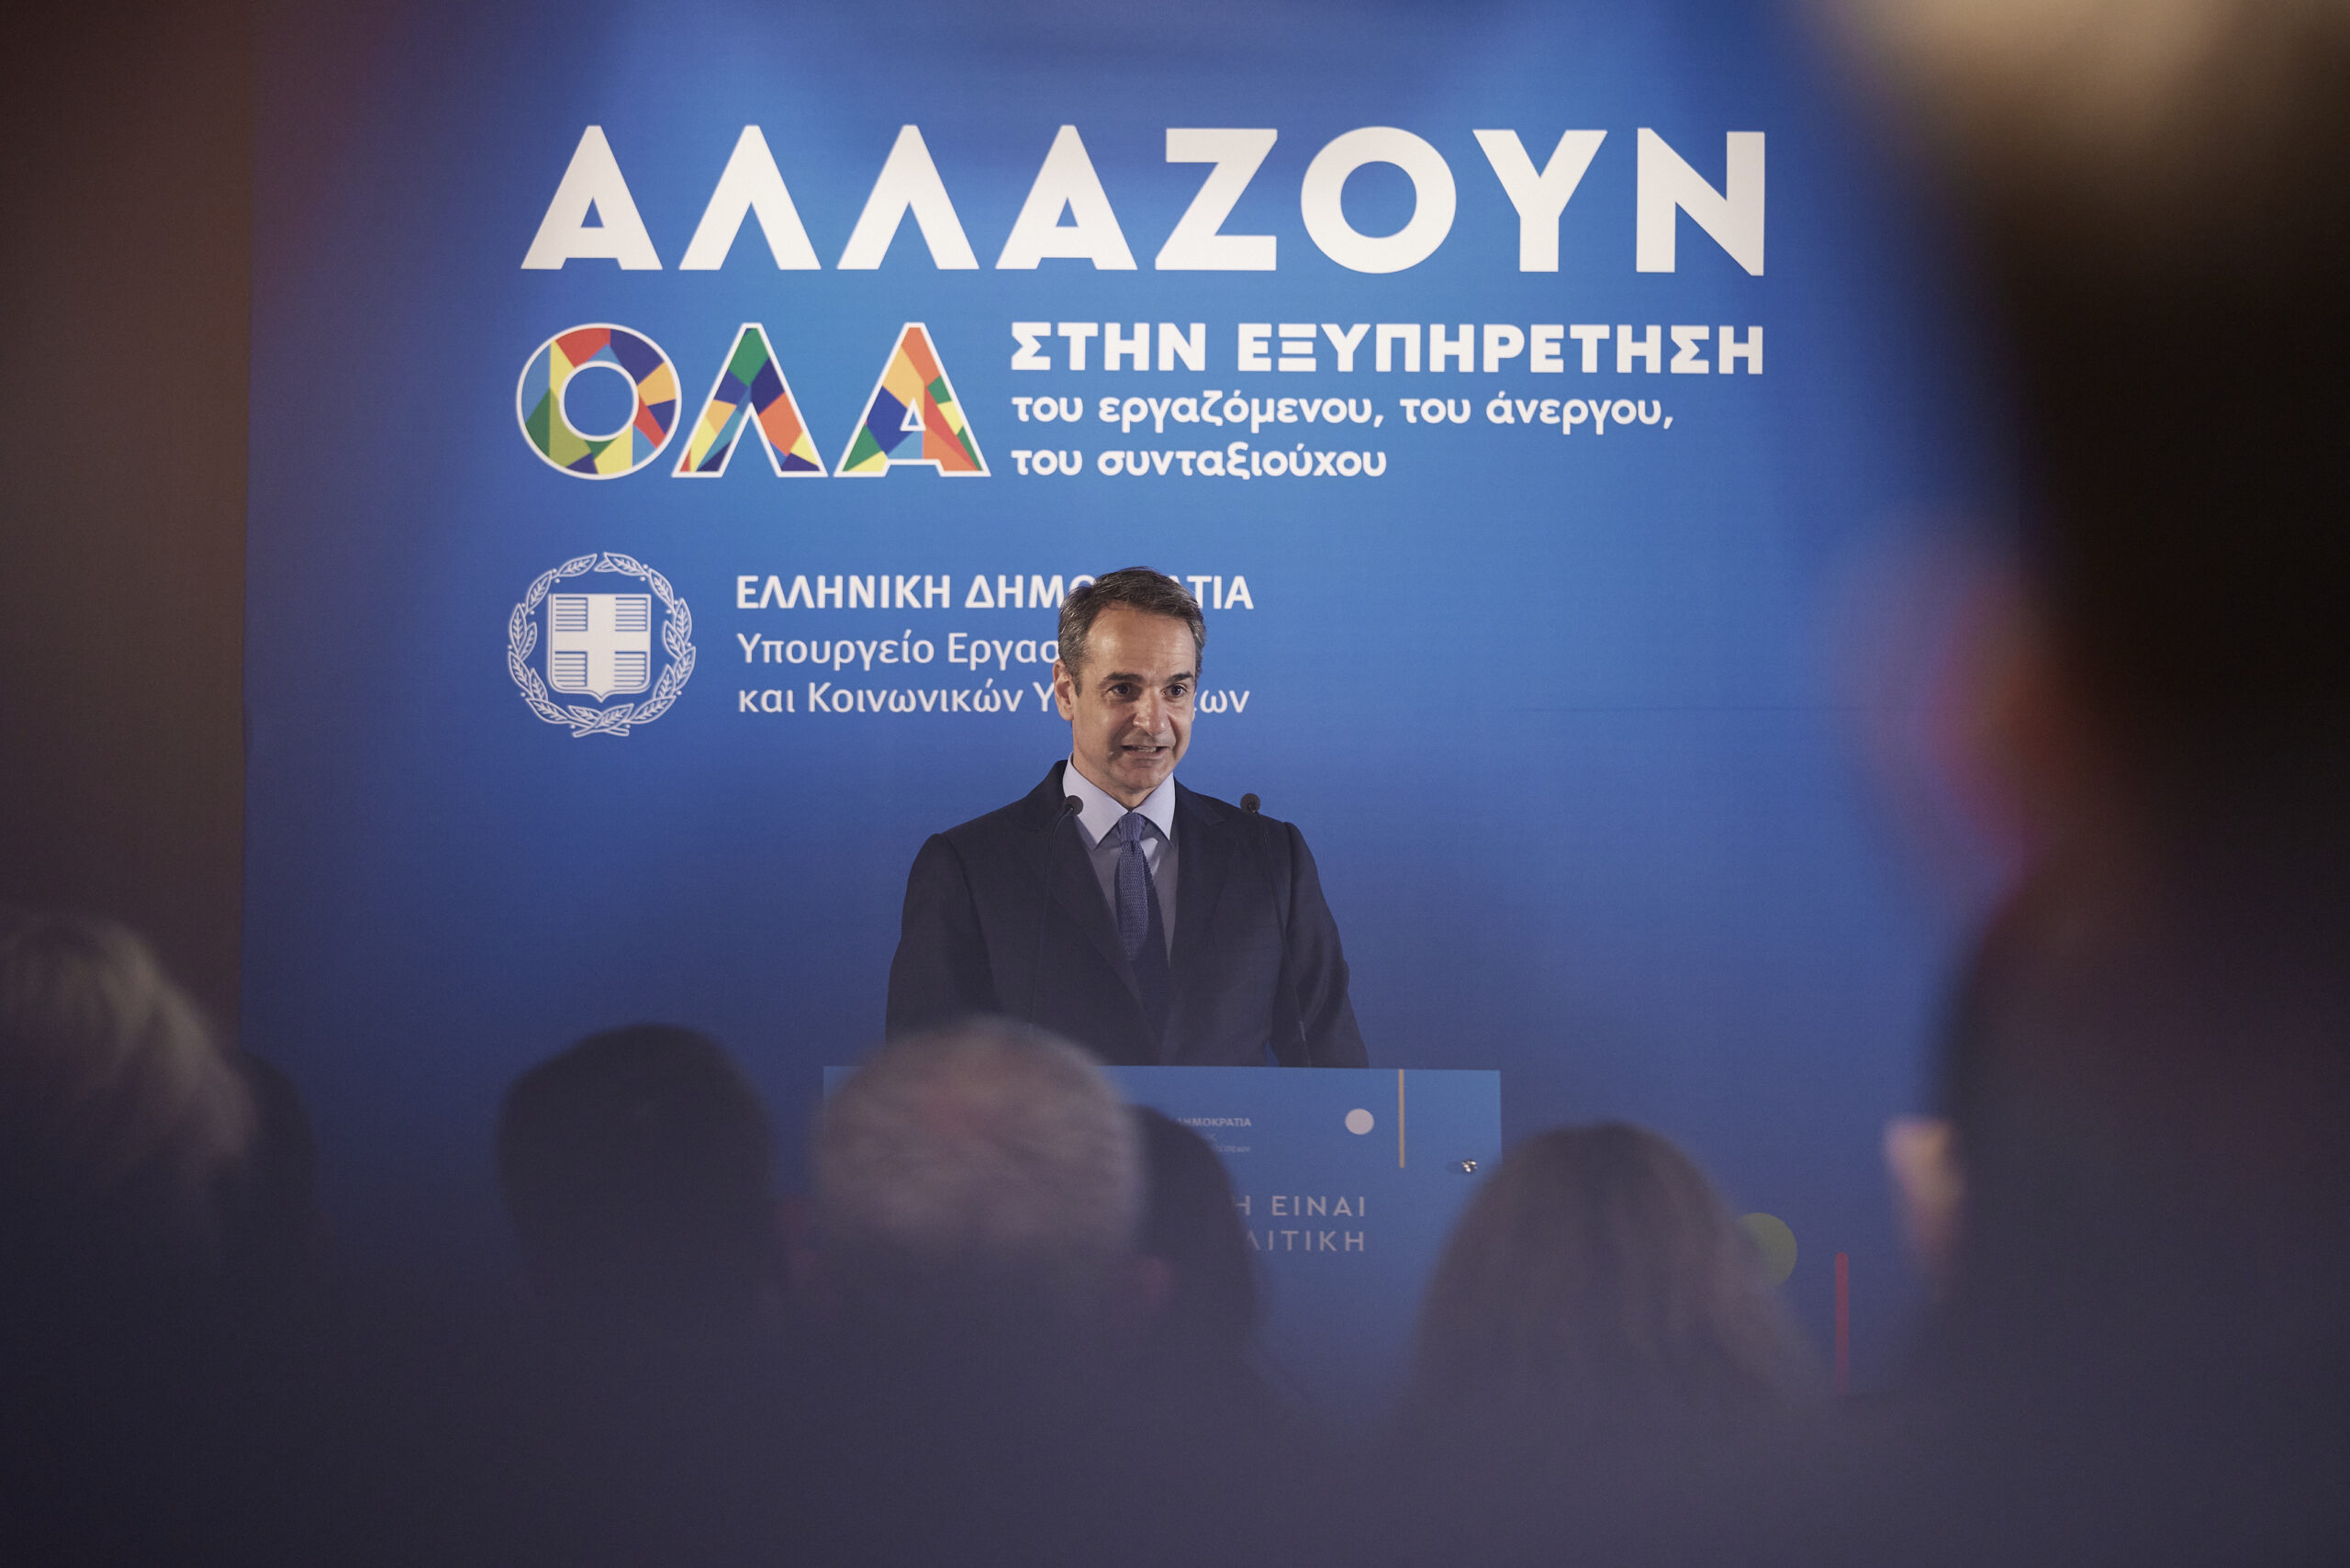 Ο Κυριάκος Μητσοτάκης στην εκδήλωση του Υπουργείου Εργασίας για την αναβάθμιση της εξυπηρέτησης των πολιτών (+ fotos)